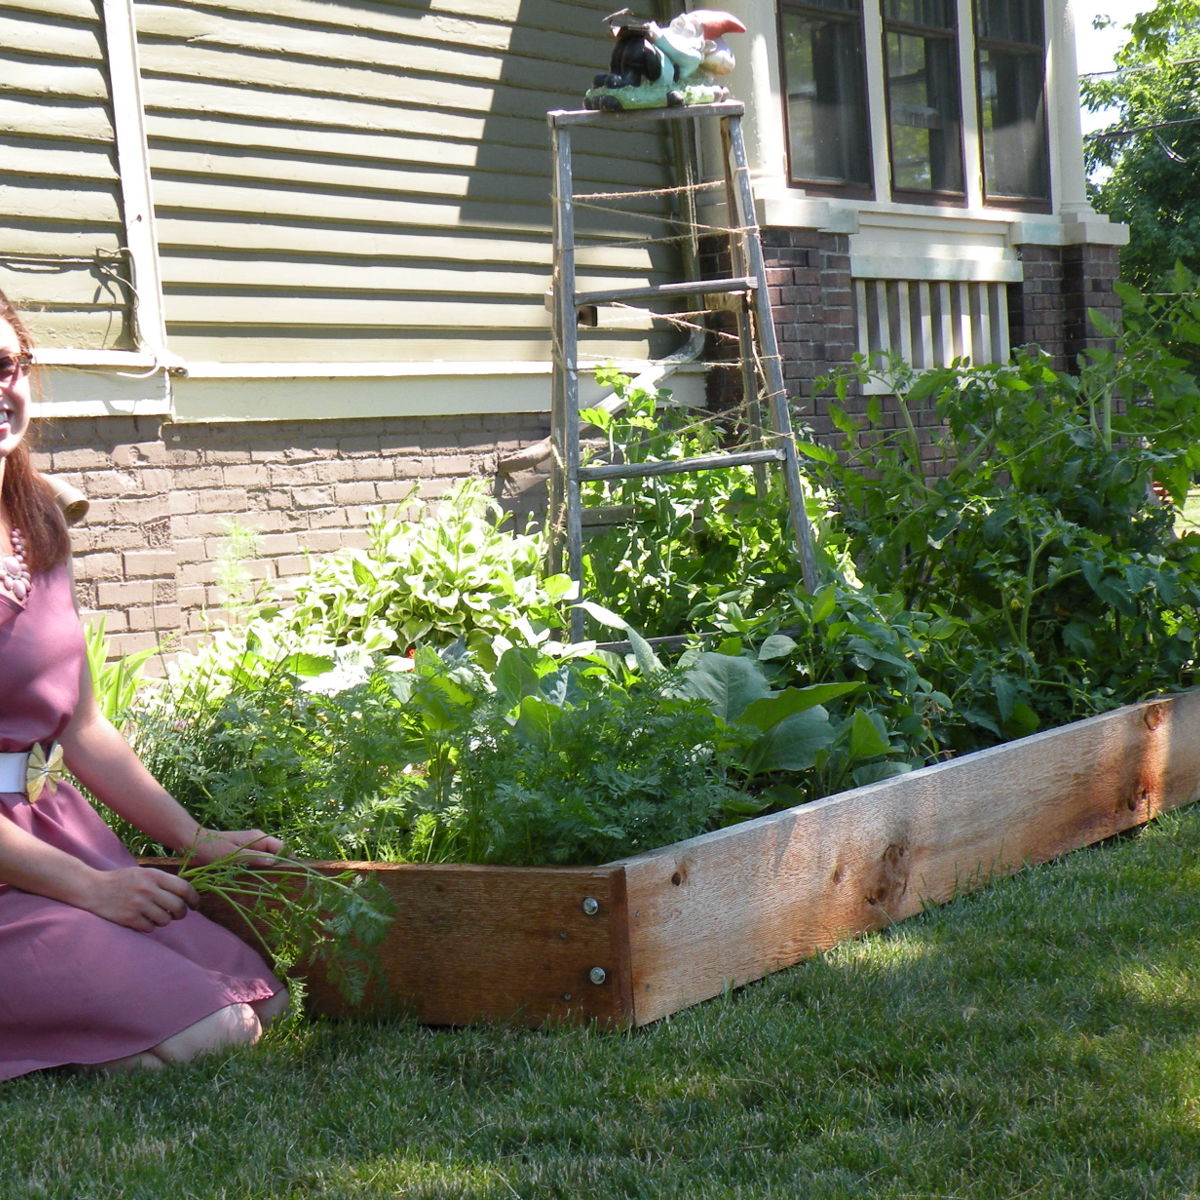 Garden-to-Table Smorgasbord—Fresh, Local, and Organic